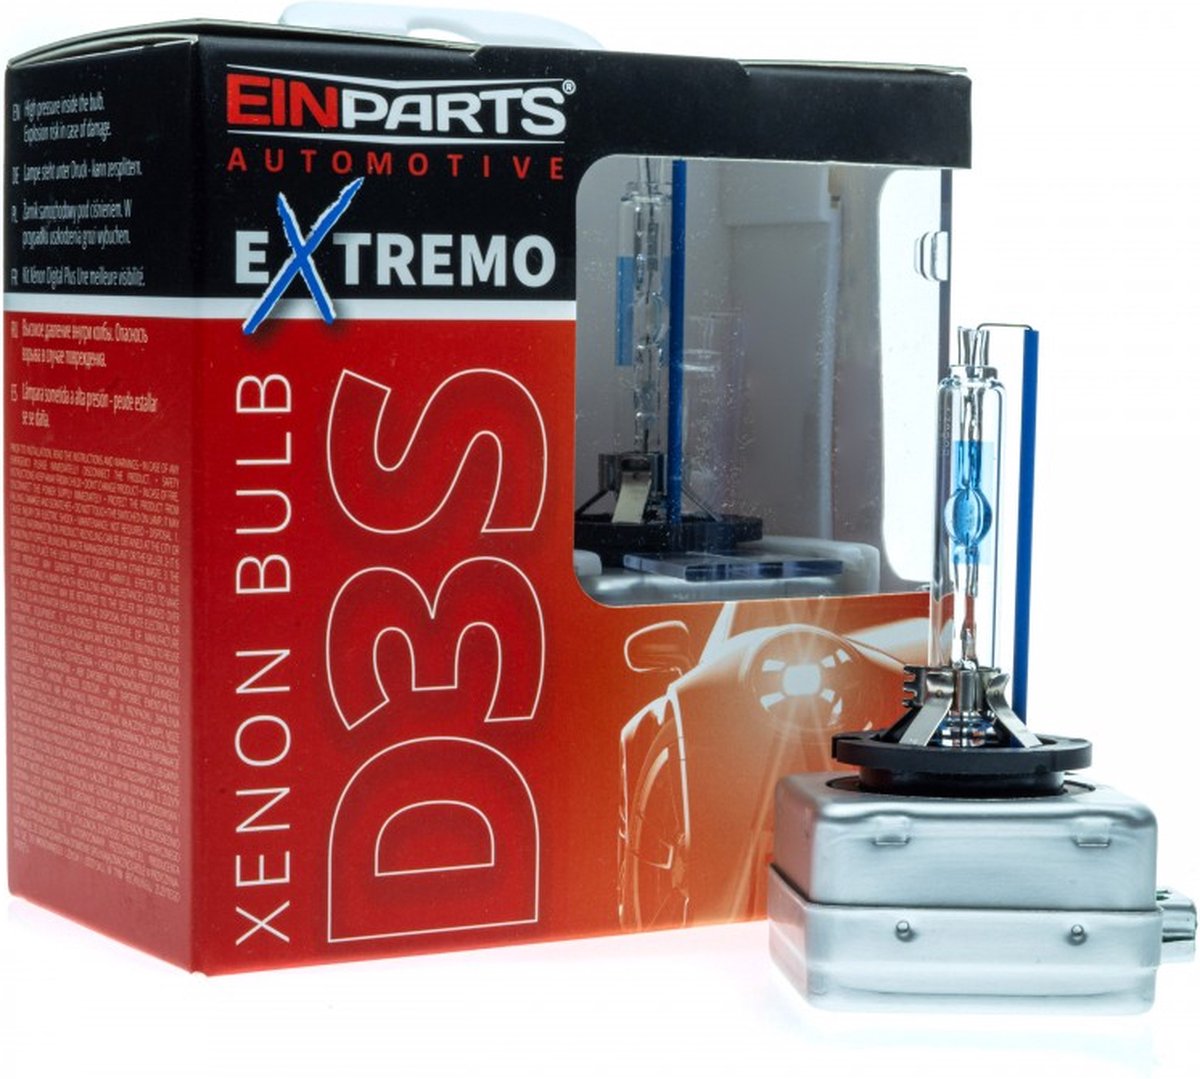 XENON D3S EXTREMO 35W 6000K Xenon lampen set van 2 stuks